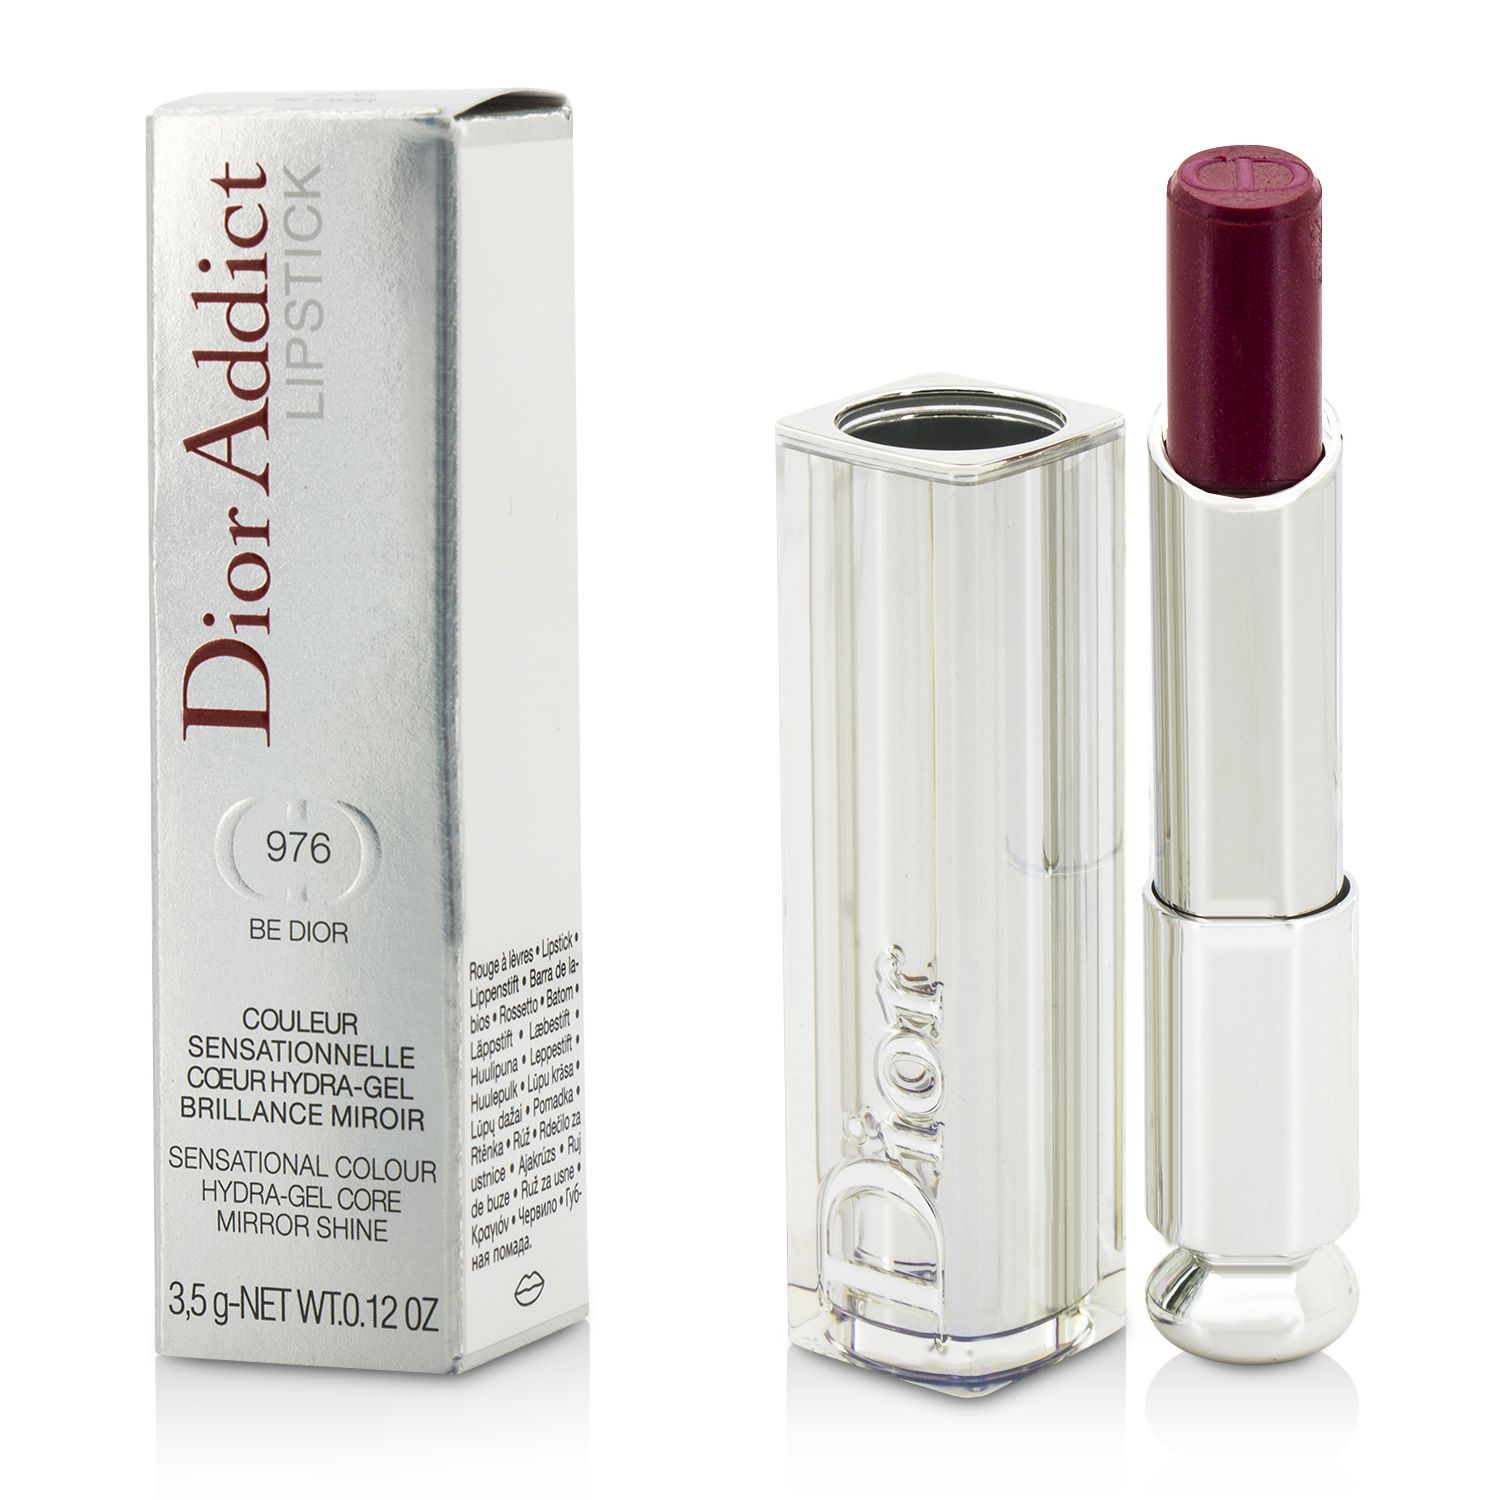 Dior Addict Hydra Gel Core Mirror Shine Lipstick - #976 Be Dior Christian Dior Image